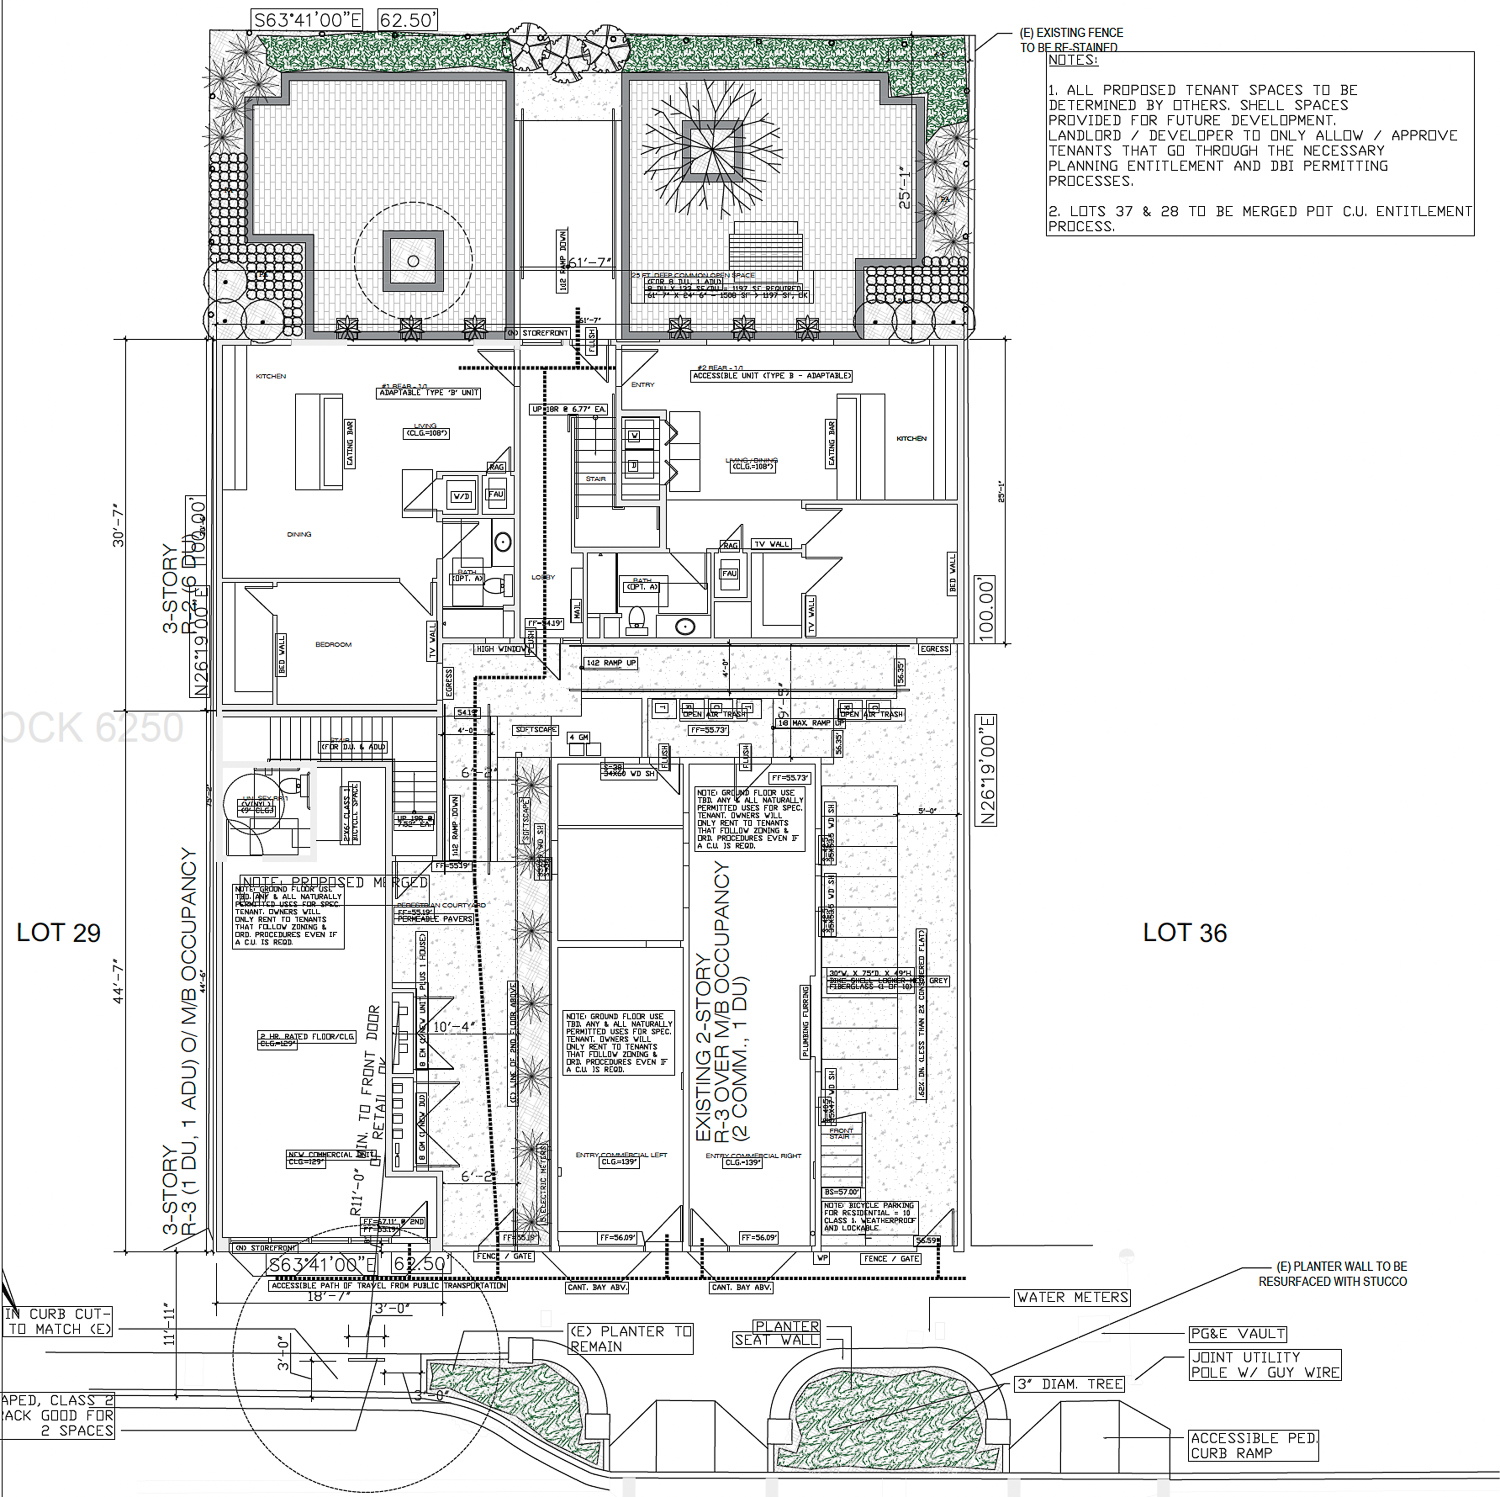 93 Leland Avenue floor plan, illustration by Baukunst